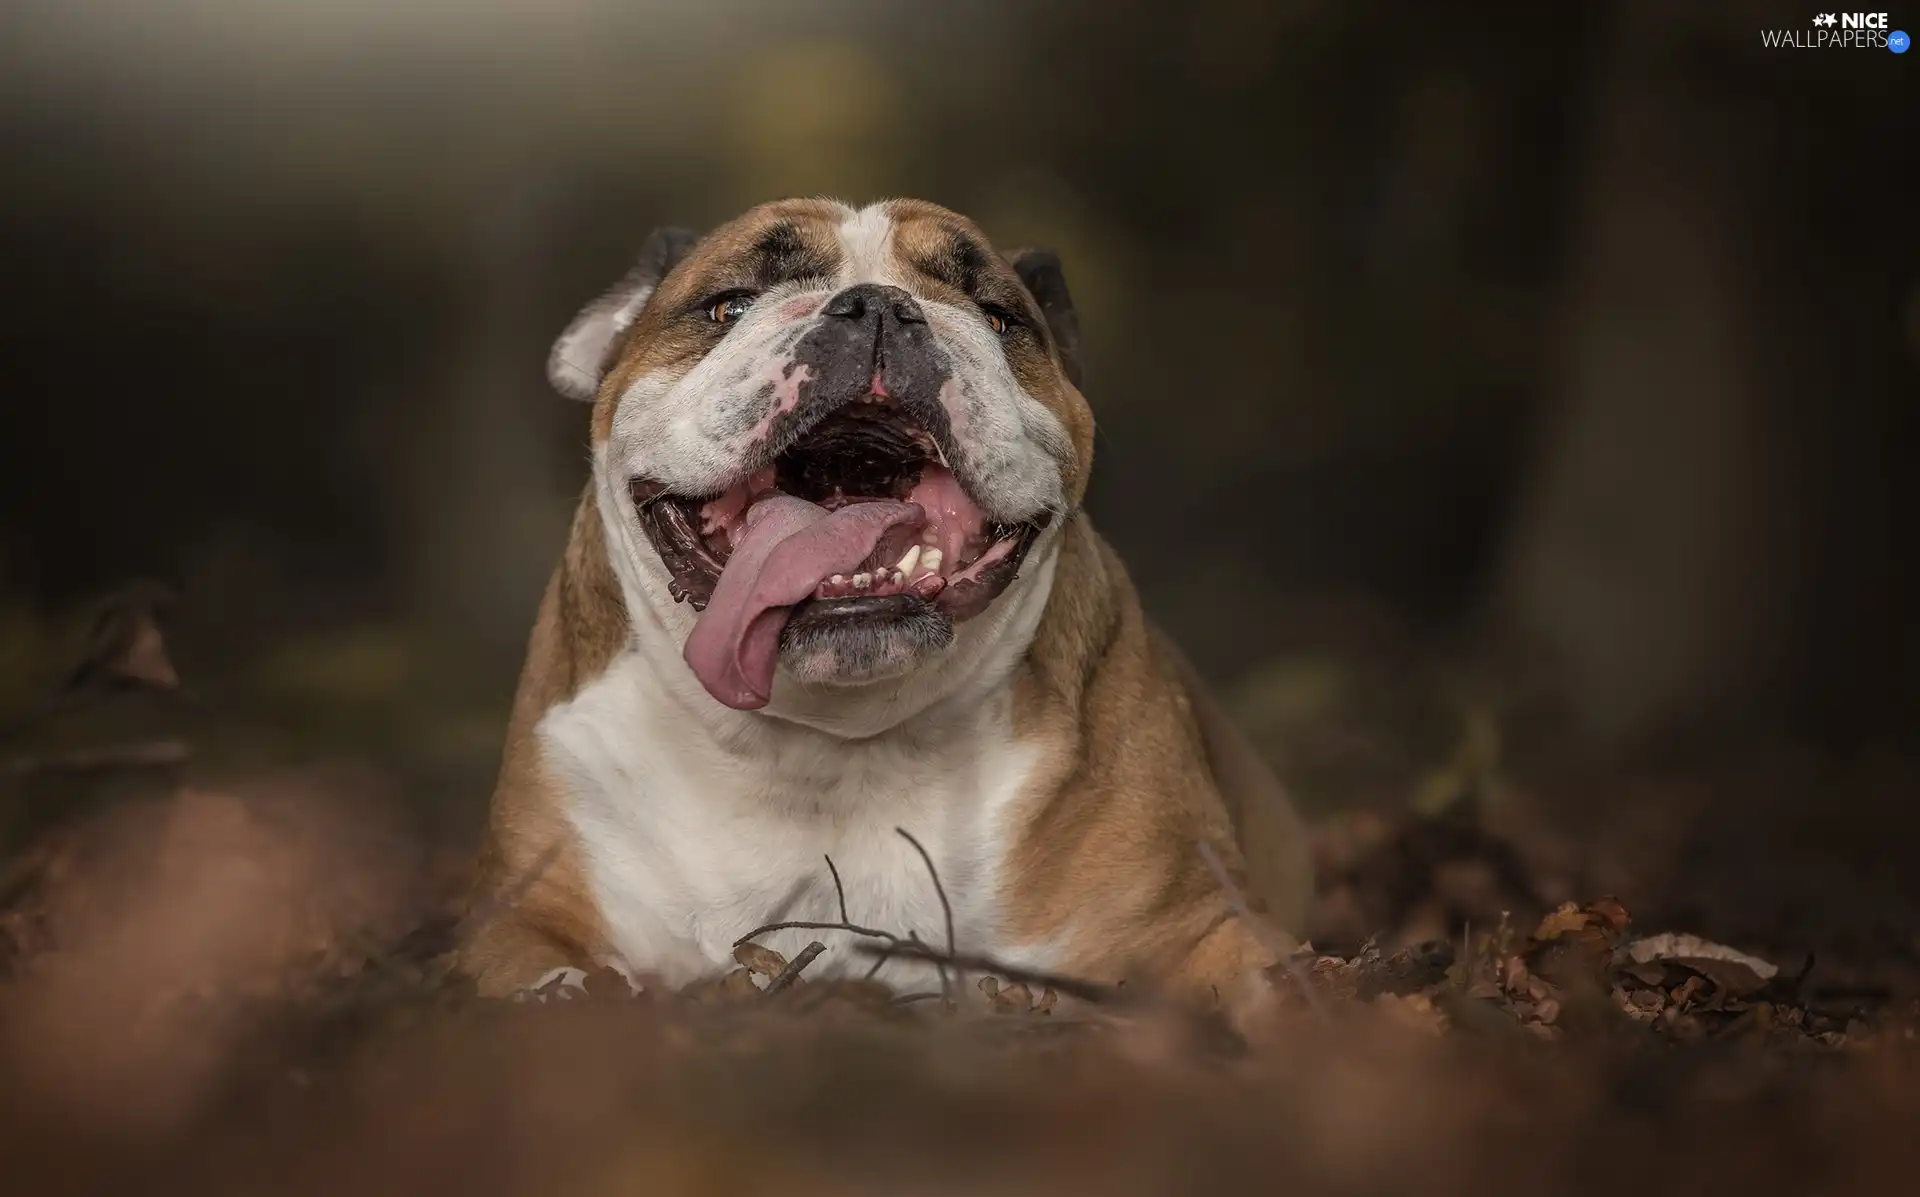 tongue, English Bulldog, mouth